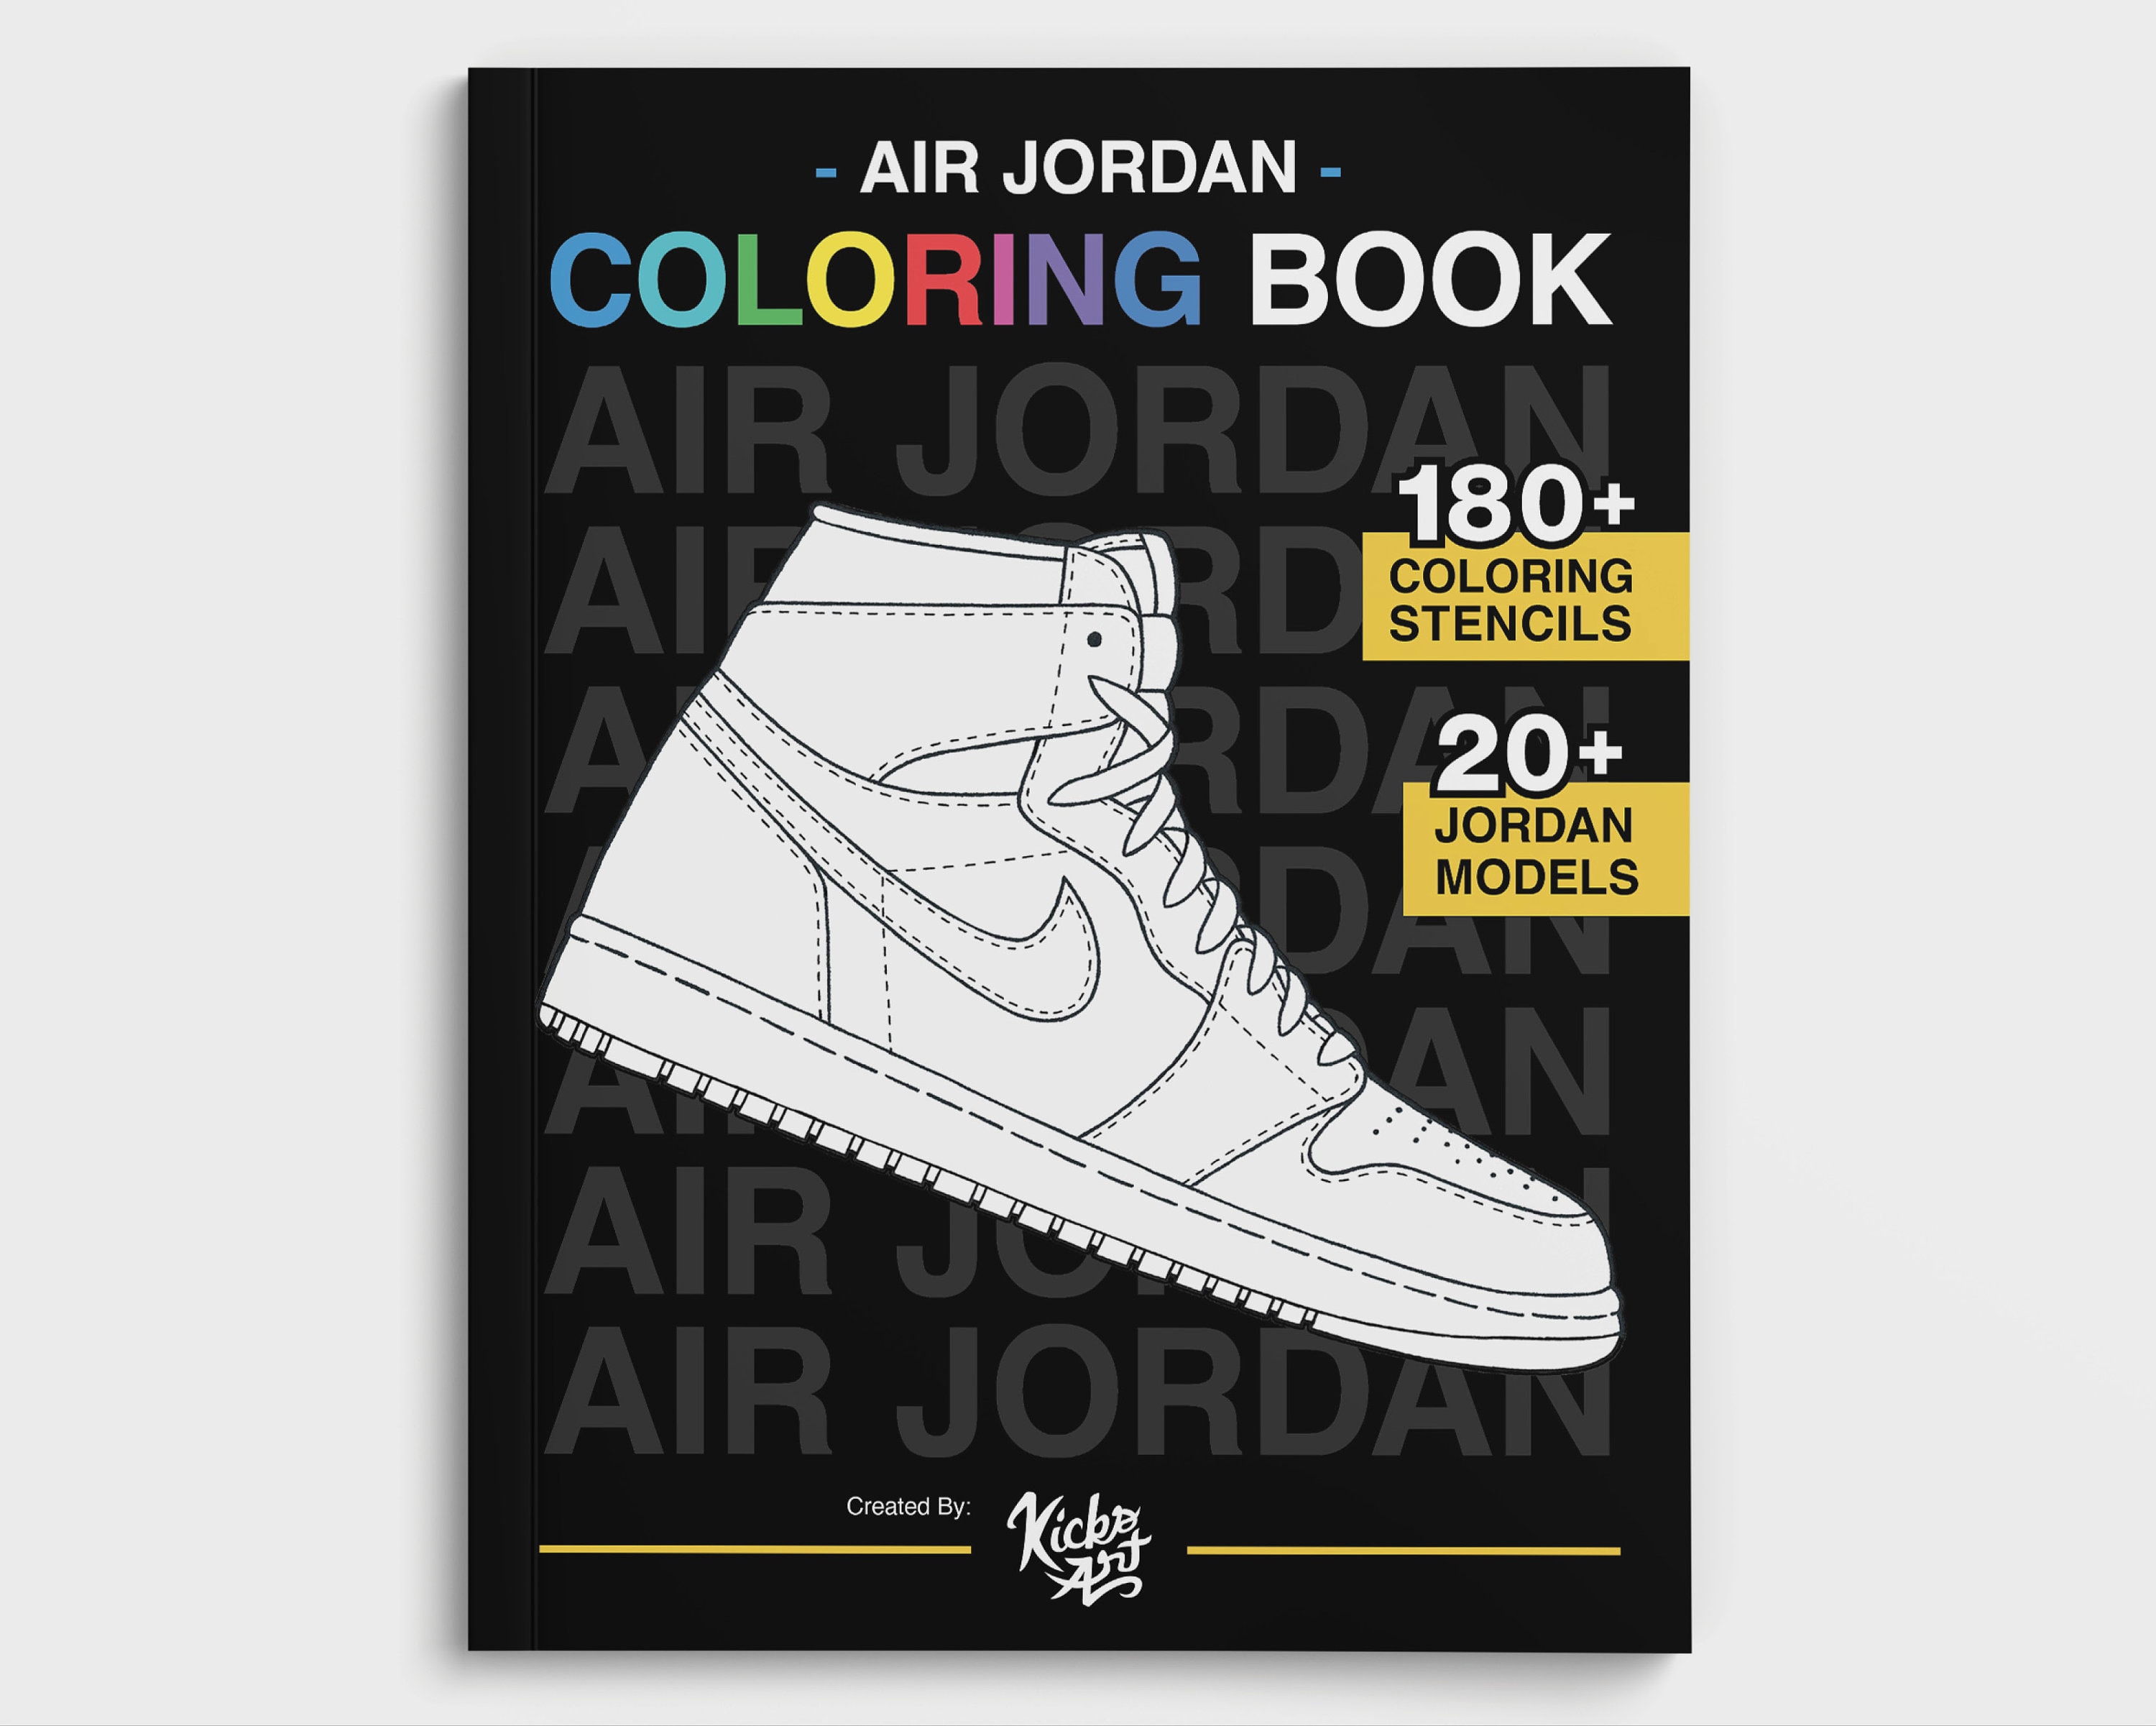 Air jordan coloring book created by kicksart